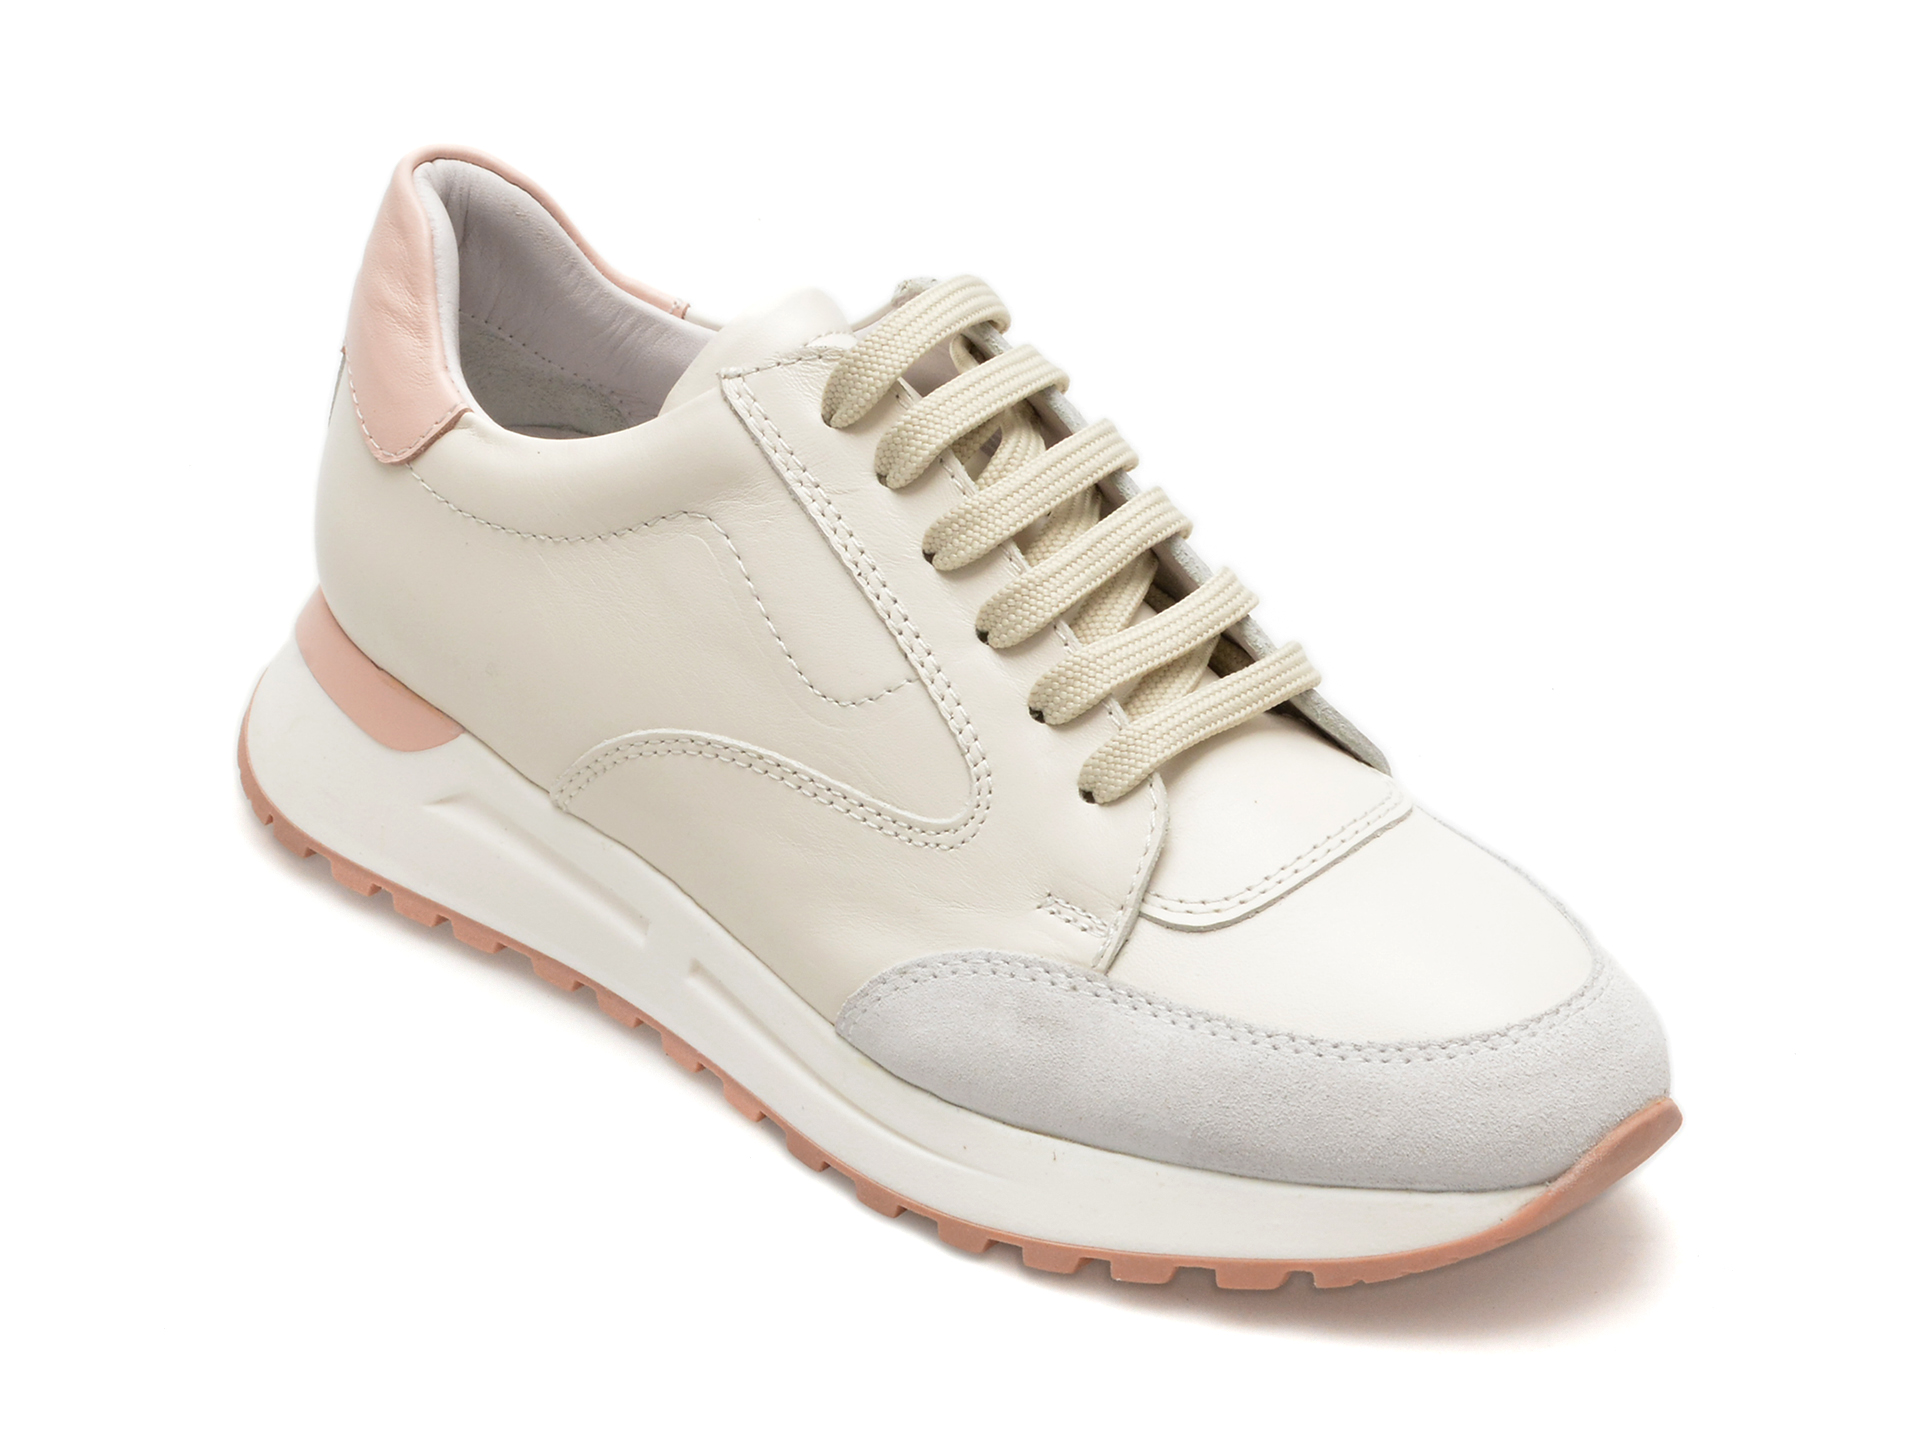 Pantofi QUSHELI albi, 35345, din piele naturala